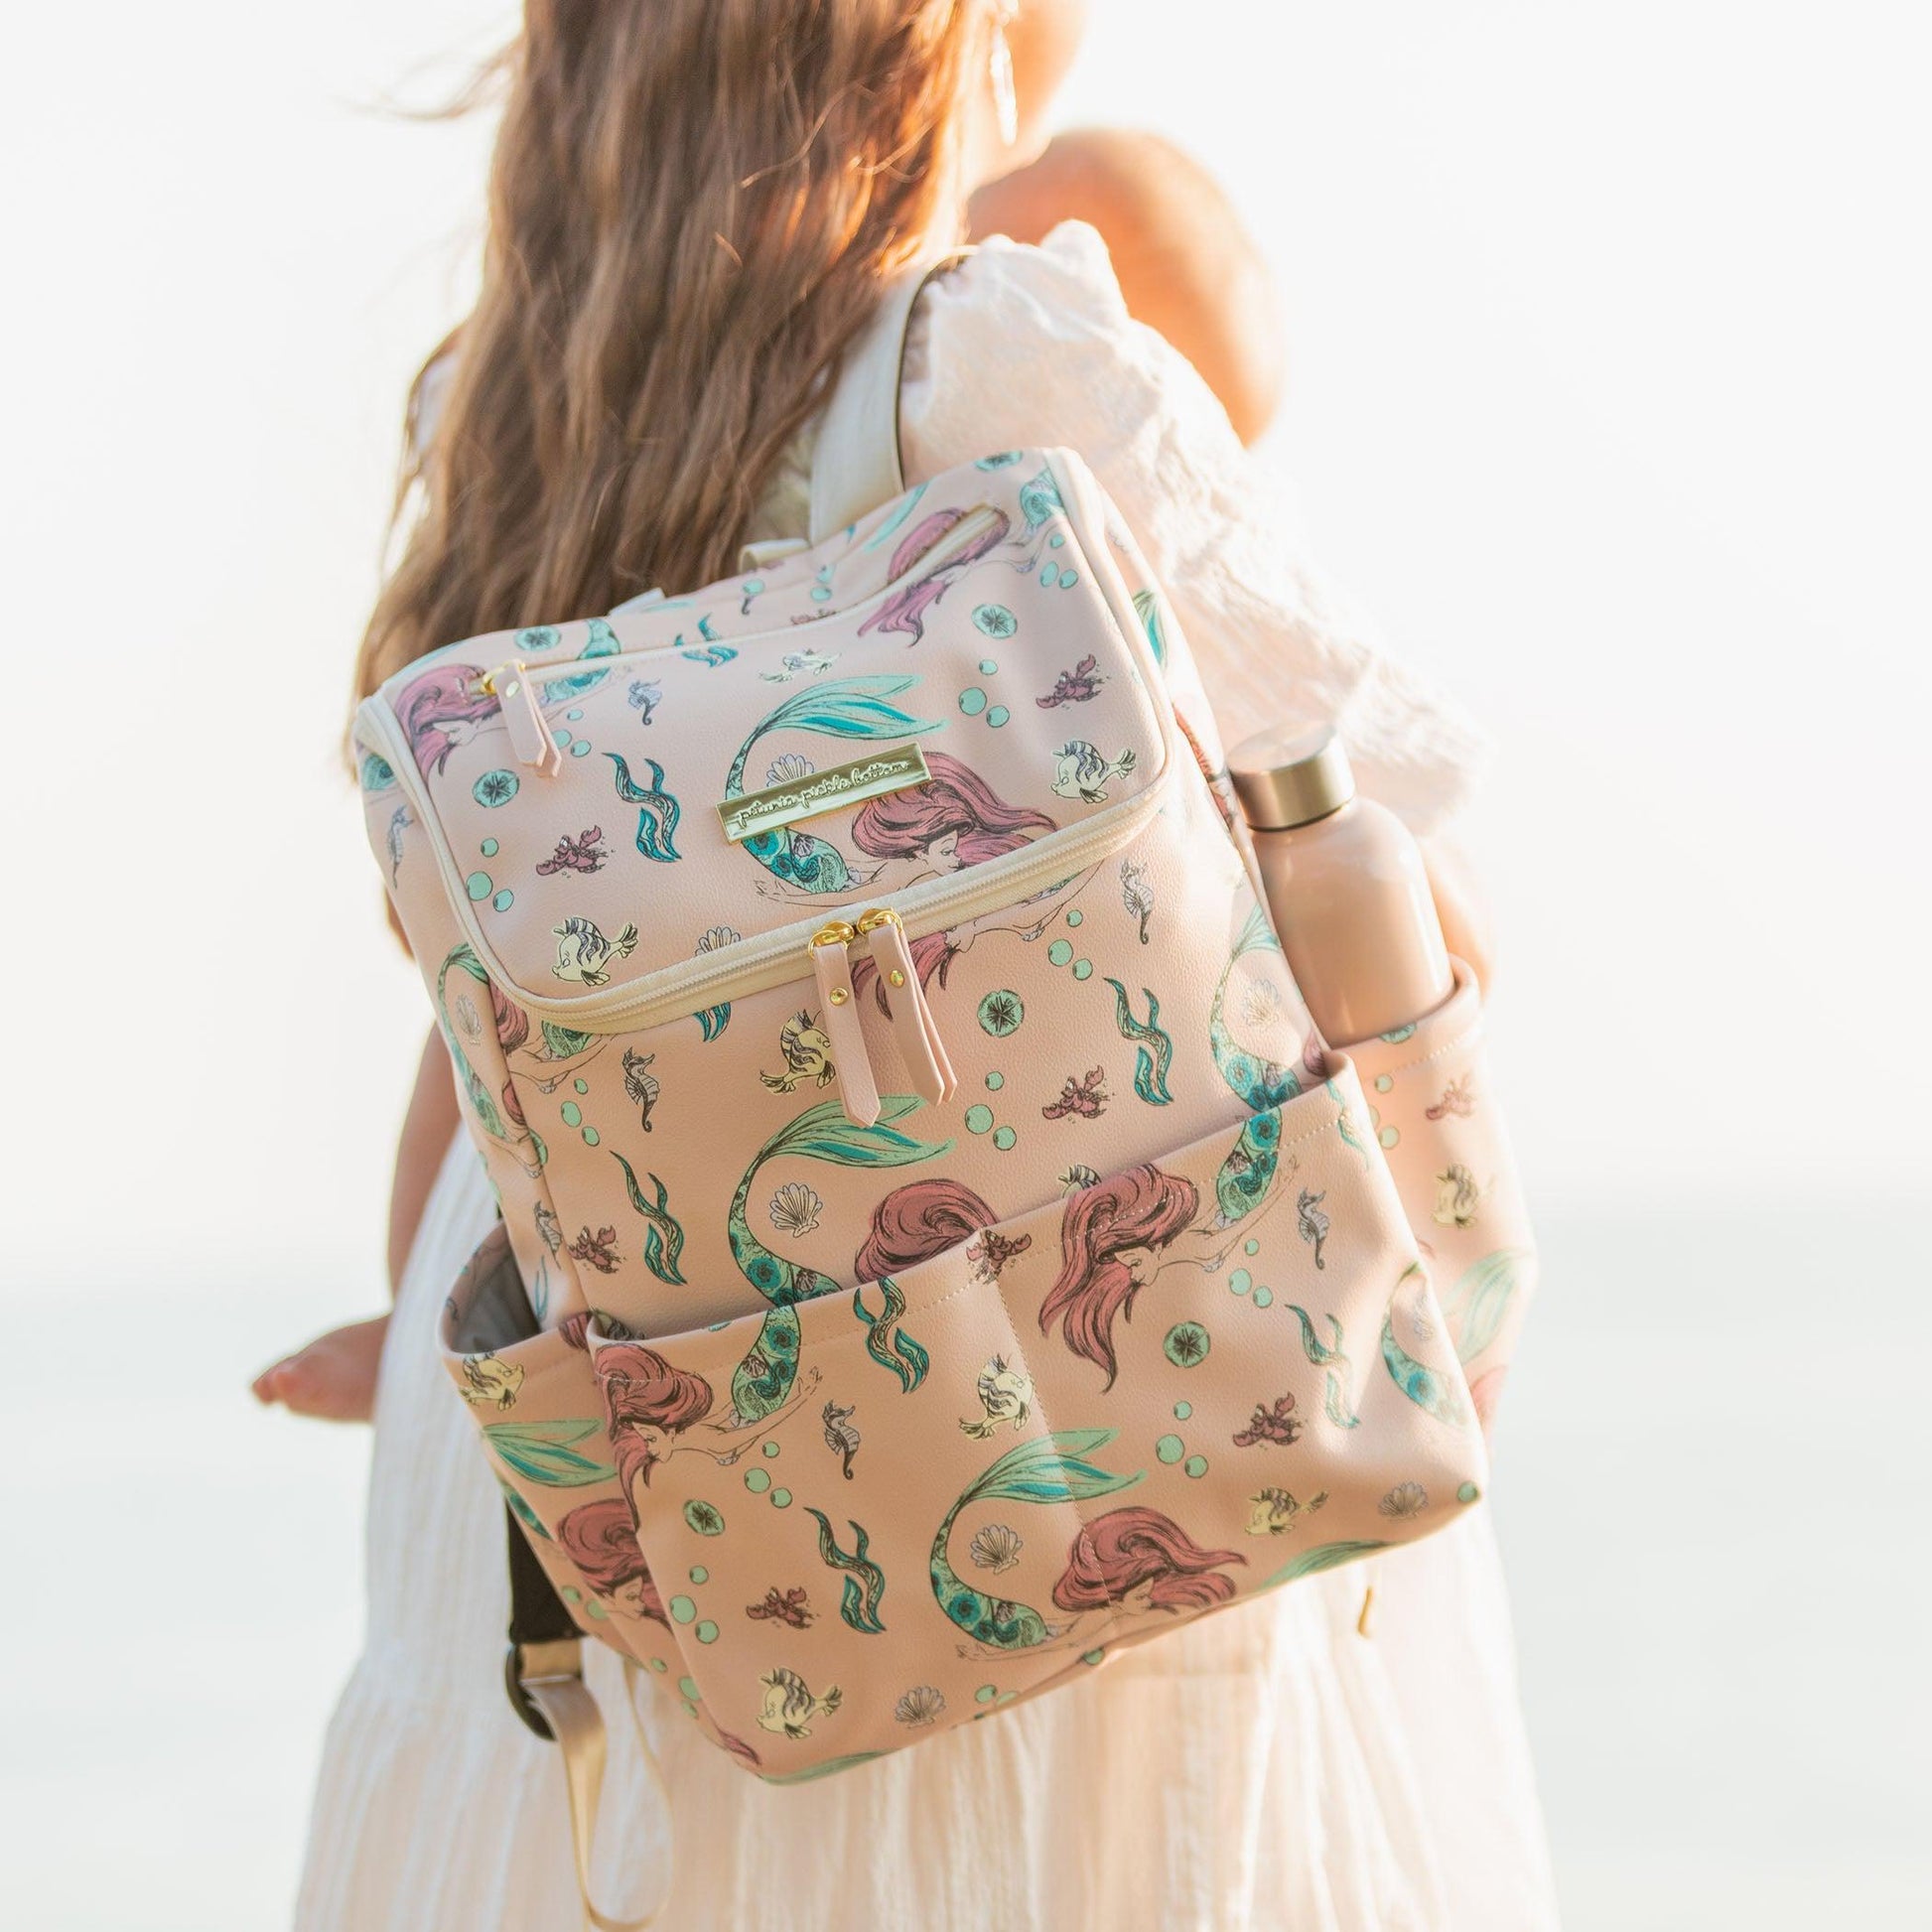 Petunia Pickle Bottom Method Backpack Diaper Bag in Disney's Little Mermaid